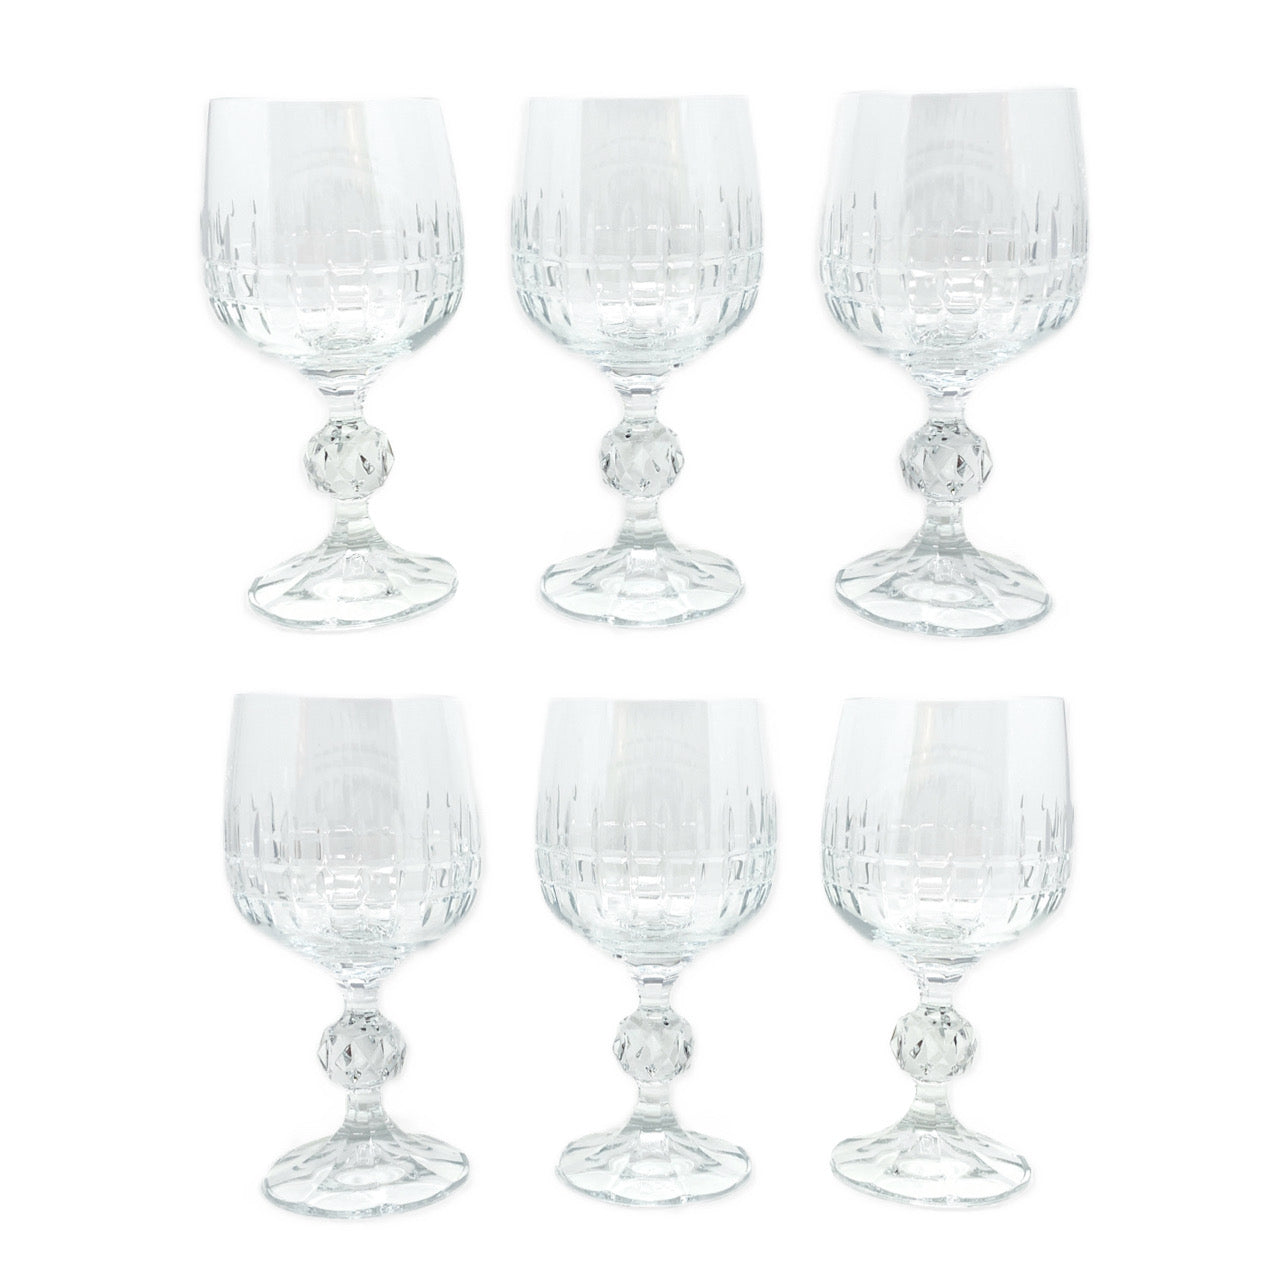 Bohemia "Belfast" Fine Lead Crystal Wine Glasses (6)